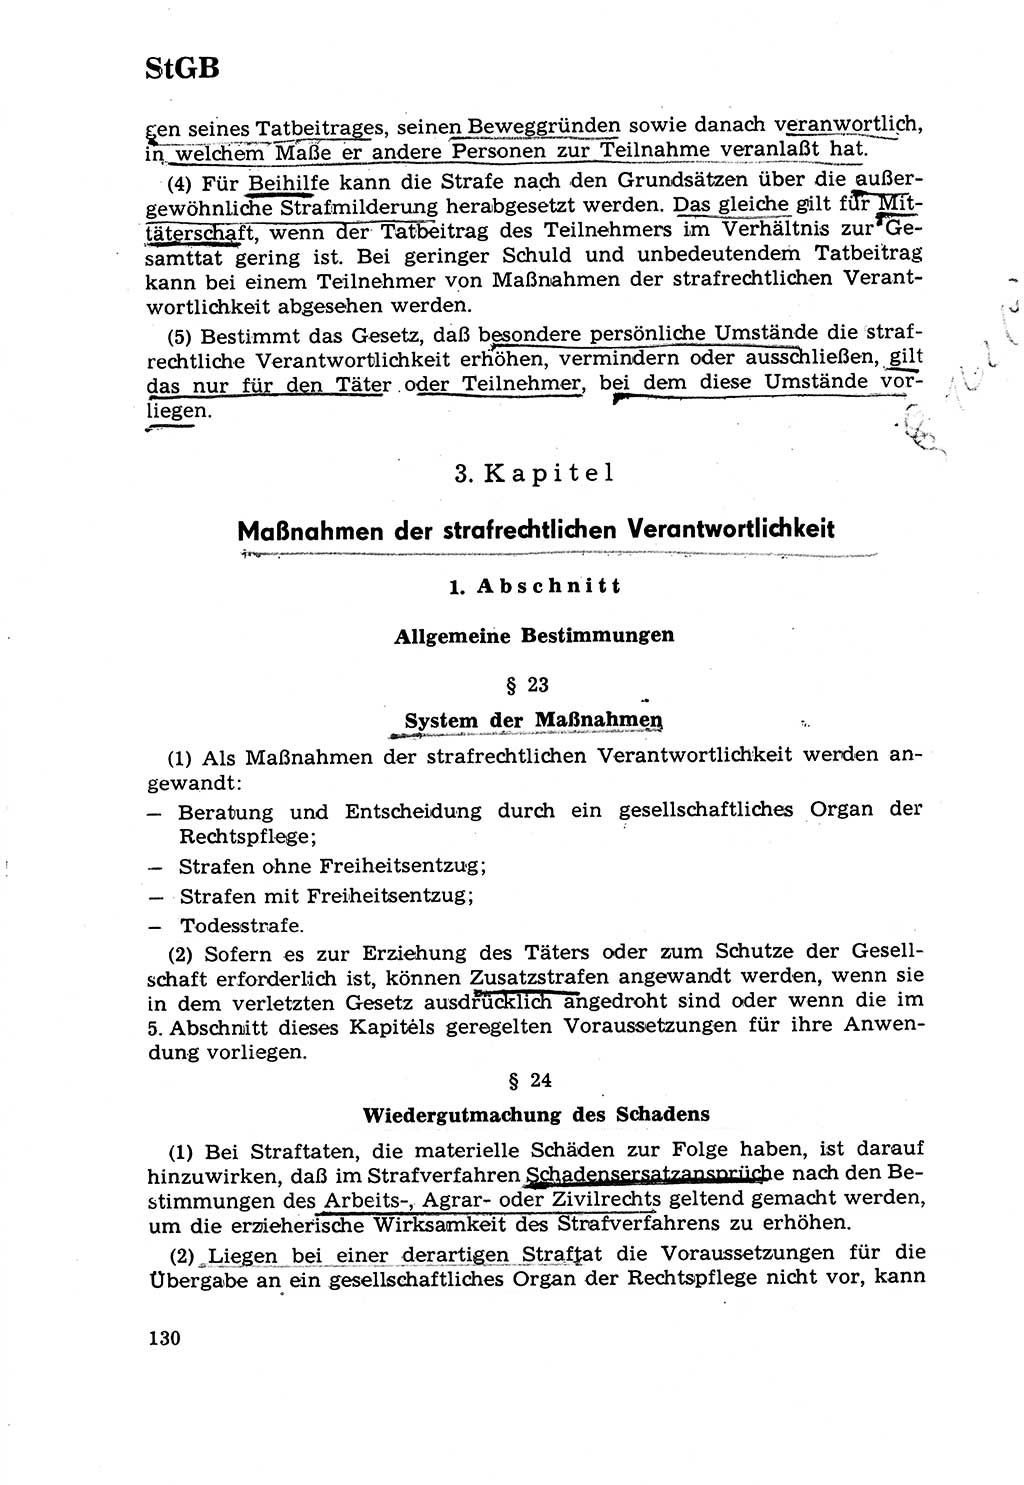 Strafrecht [Deutsche Demokratische Republik (DDR)] 1968, Seite 130 (Strafr. DDR 1968, S. 130)